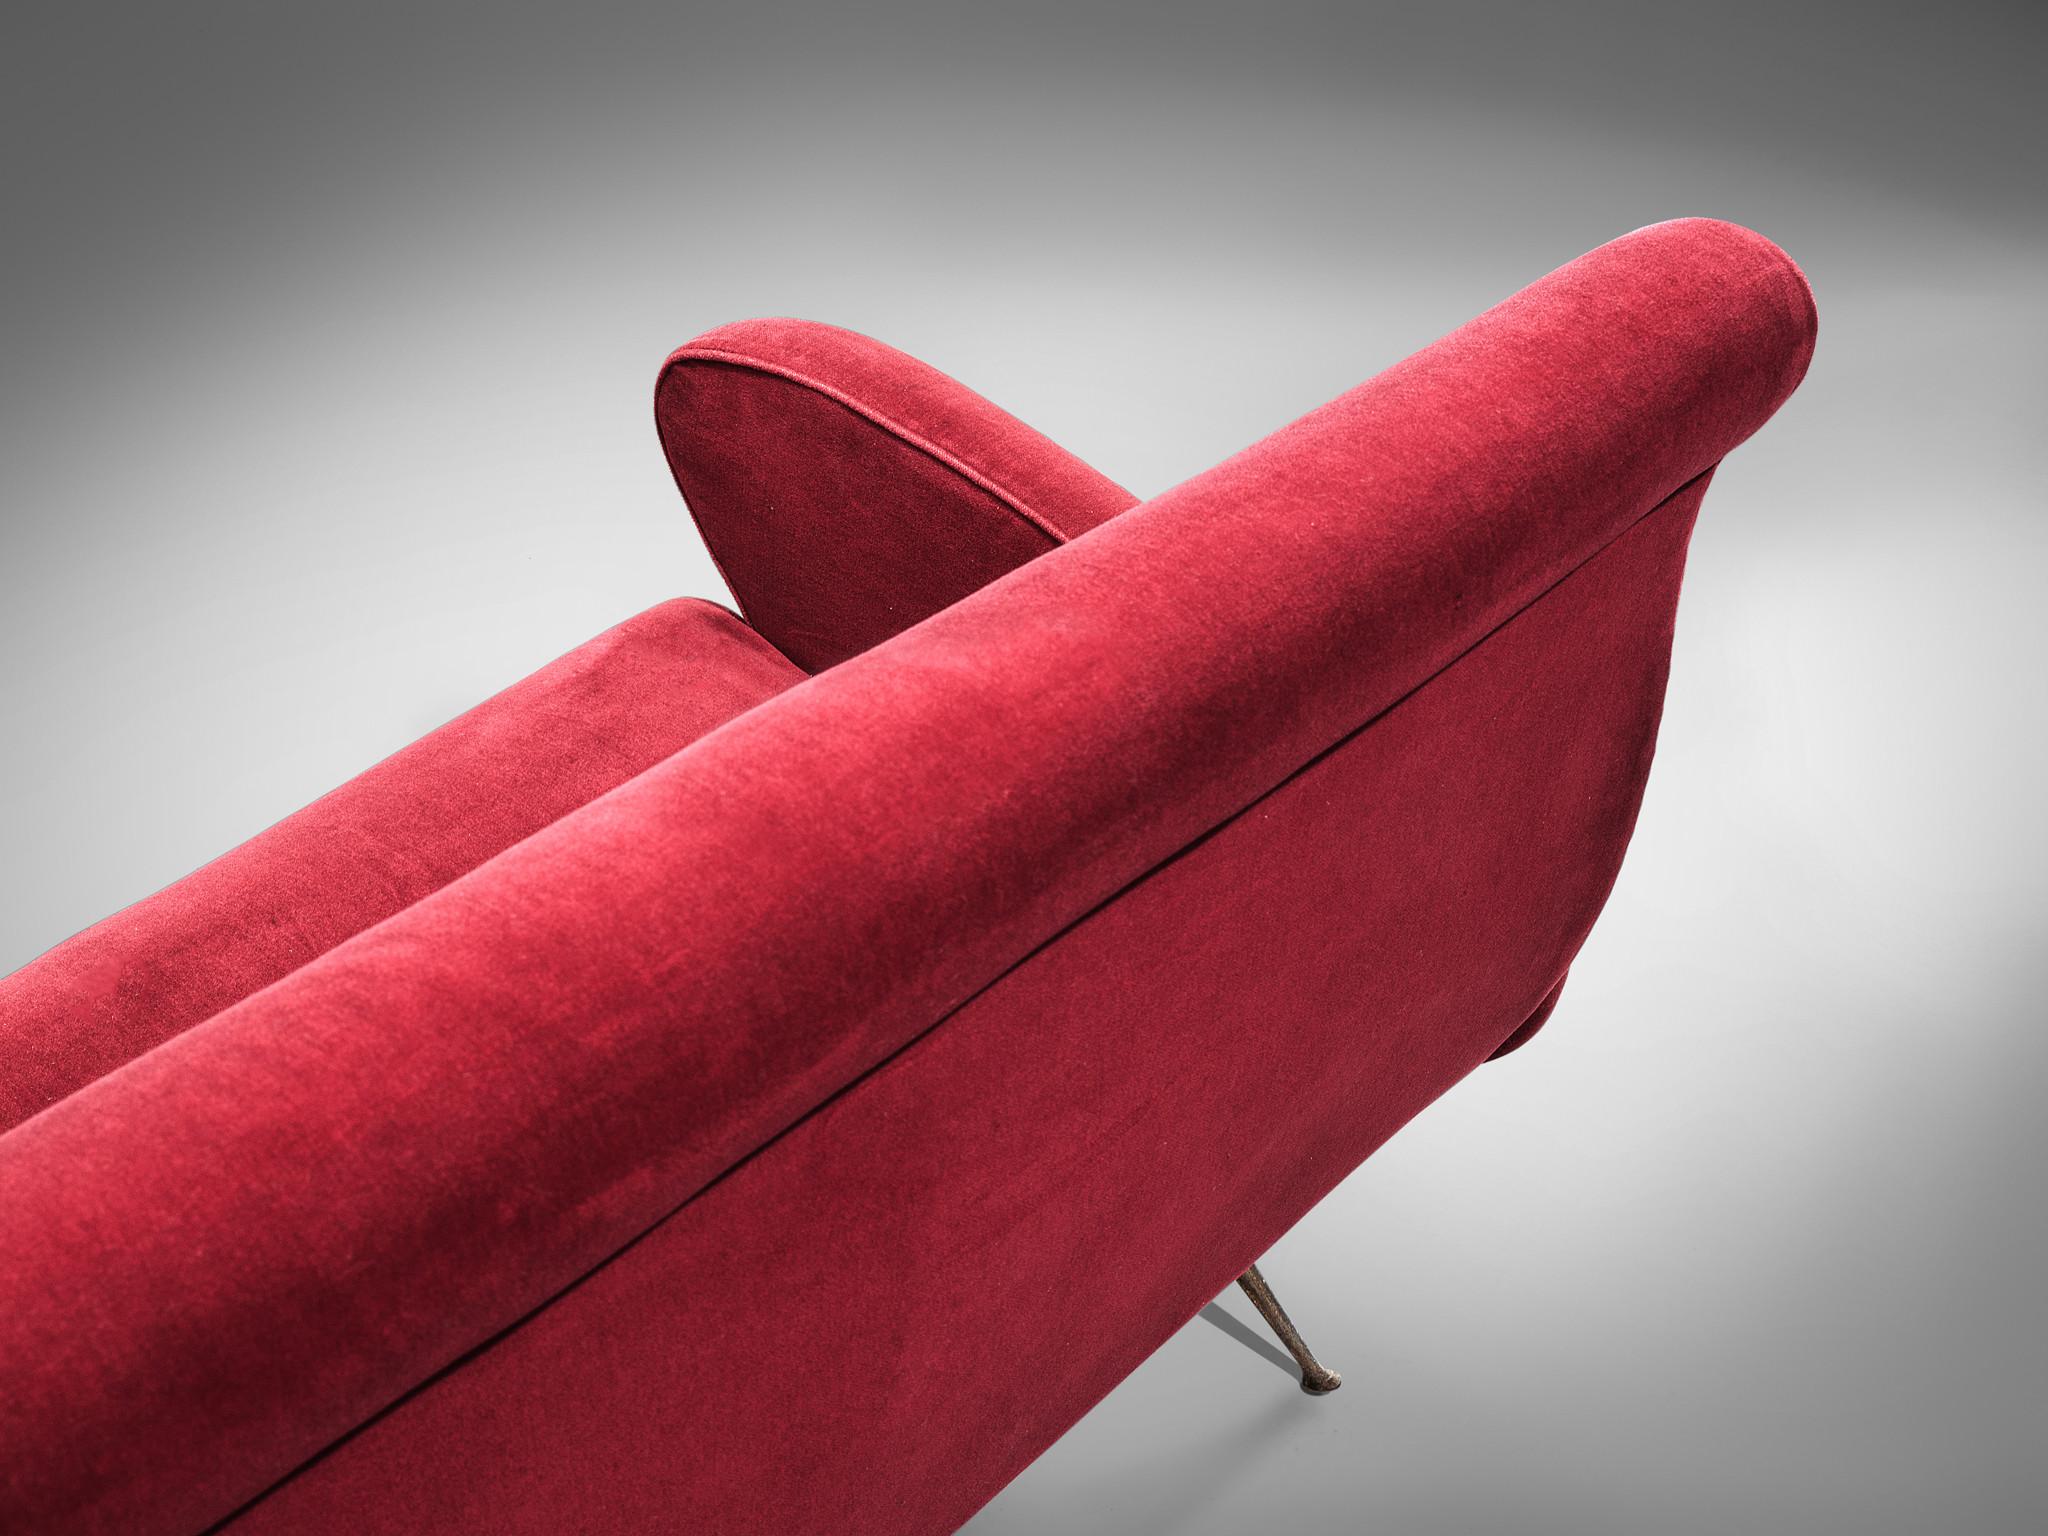 Canapé, velours rouge, laiton, Italie, années 1950.

Ce canapé est un exemple emblématique du design italien des années cinquante. Organique et sculptural, le canapé deux places est tout sauf minimaliste. Doté des pieds originaux en laiton à talon